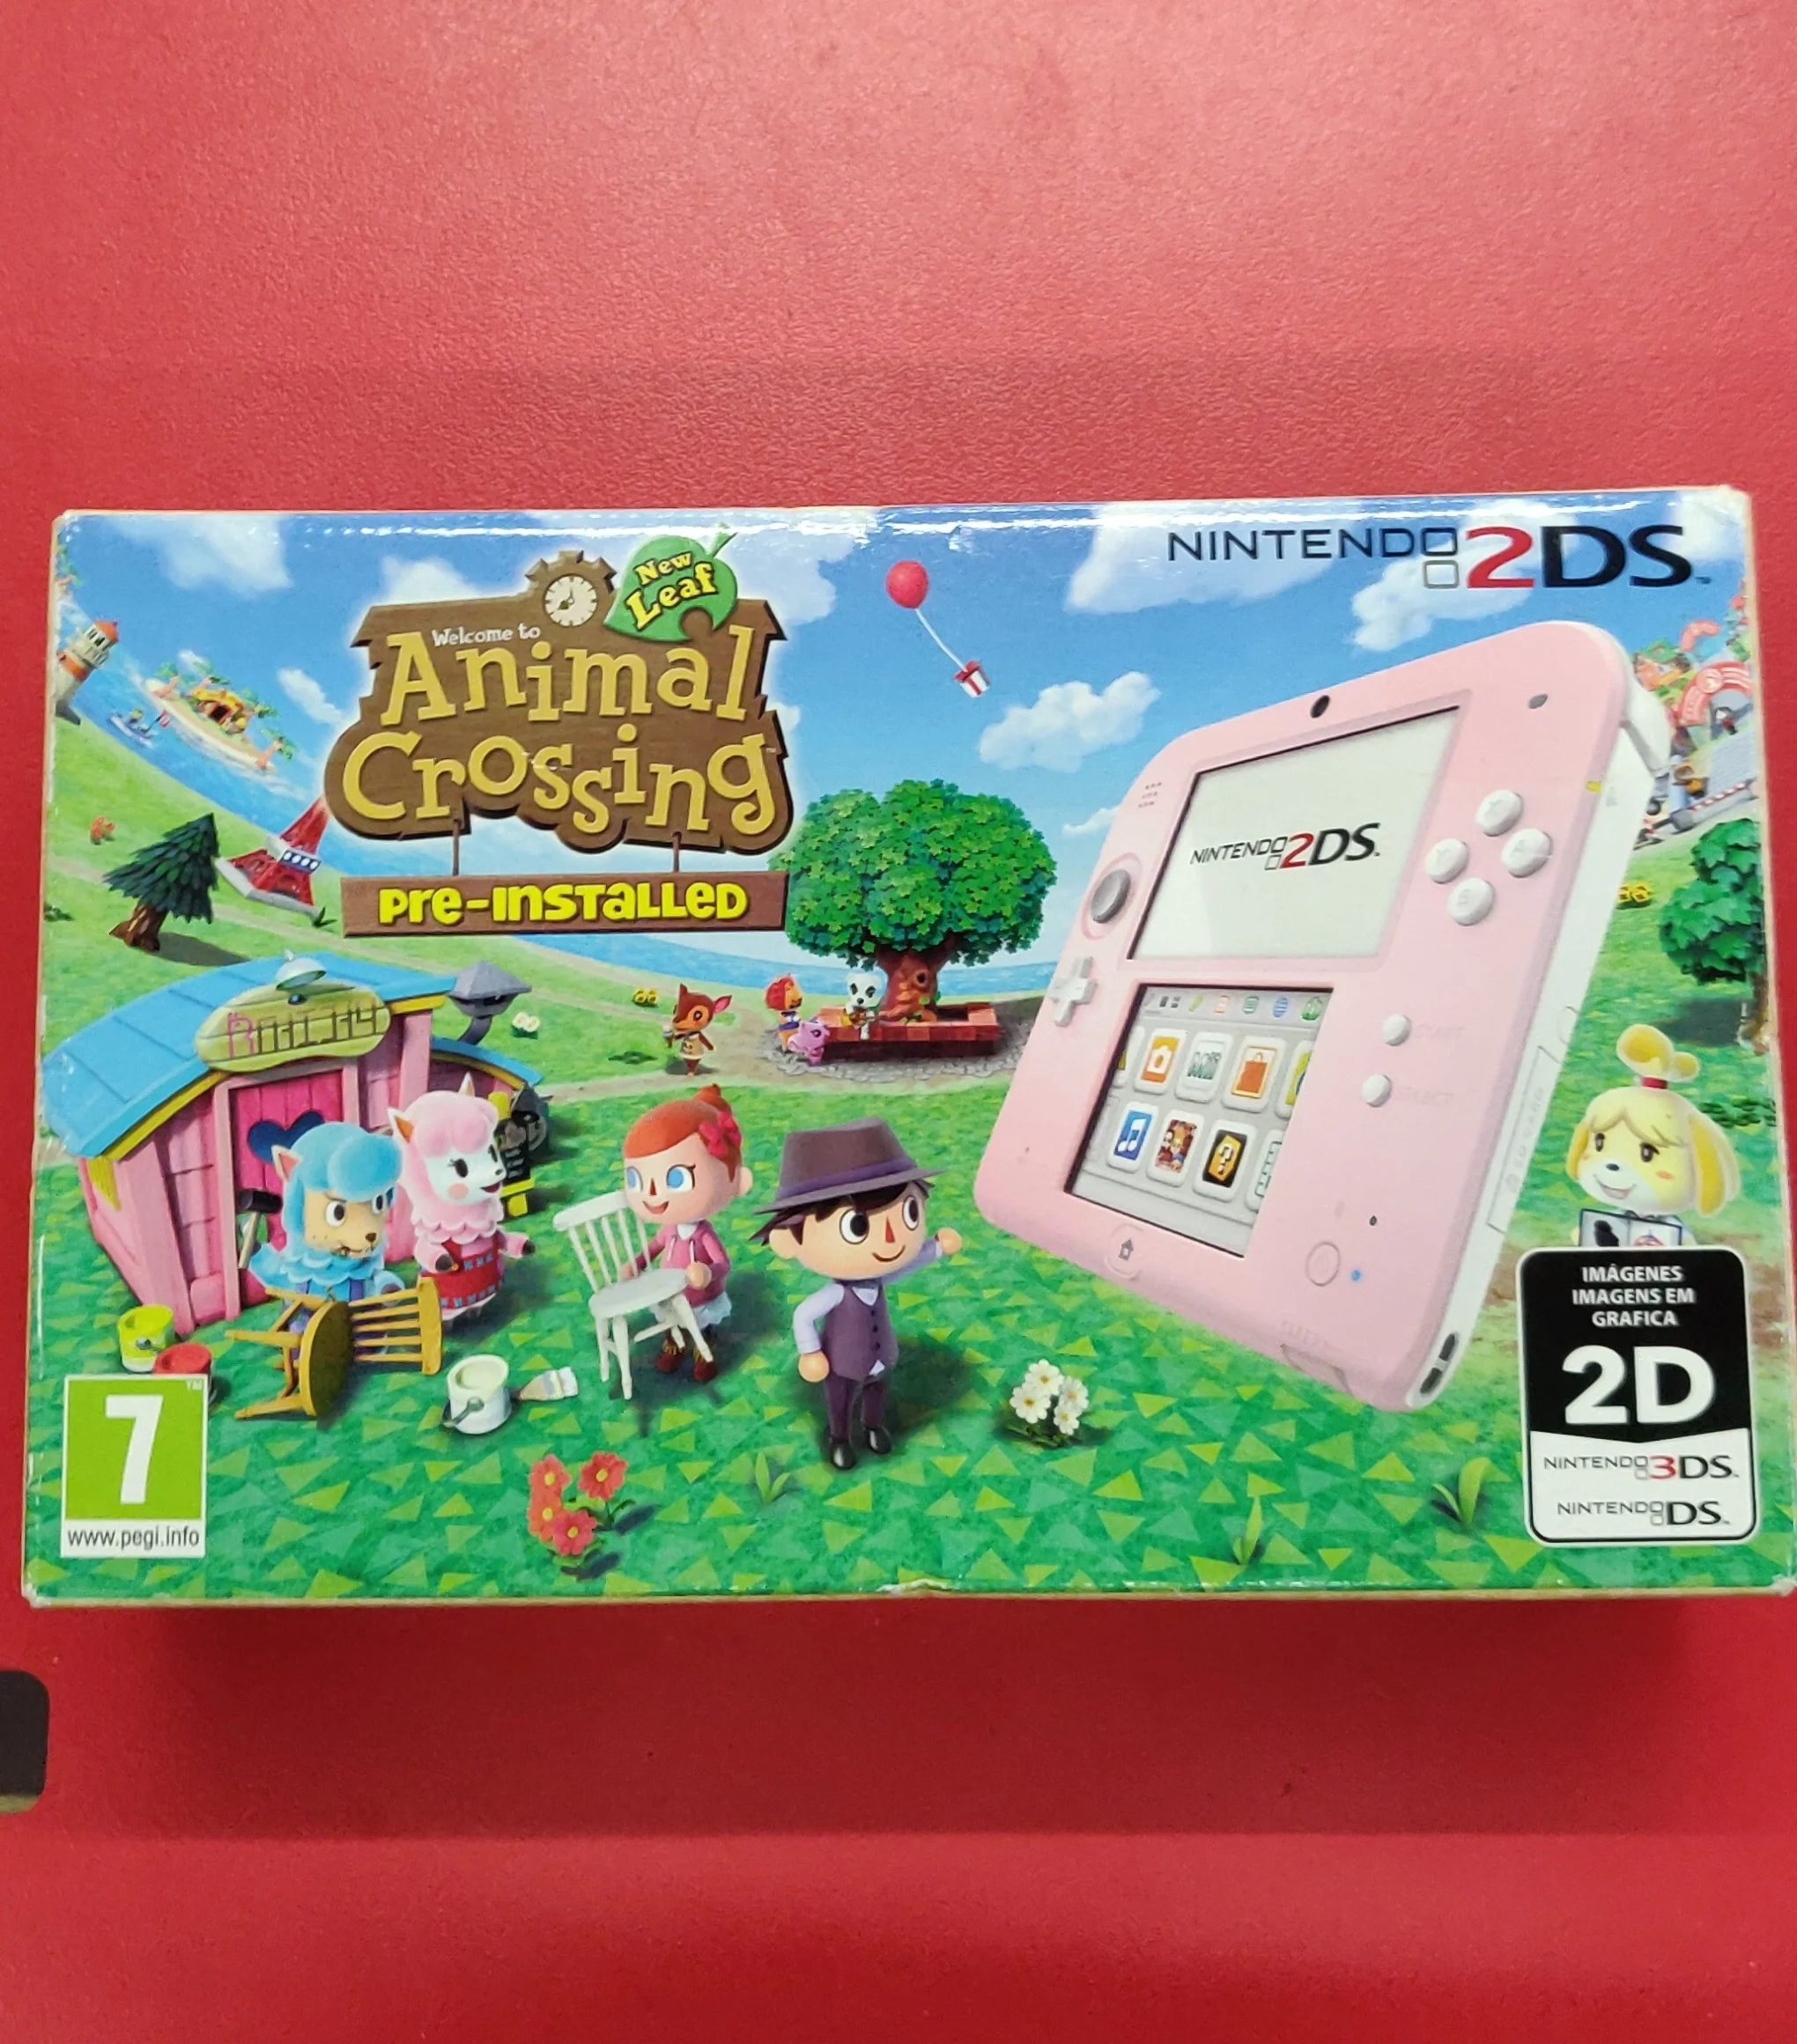 . Bezienswaardigheden bekijken een kopje Nintendo 2DS Animal Crossing New Leaf Bunde - Consolevariations